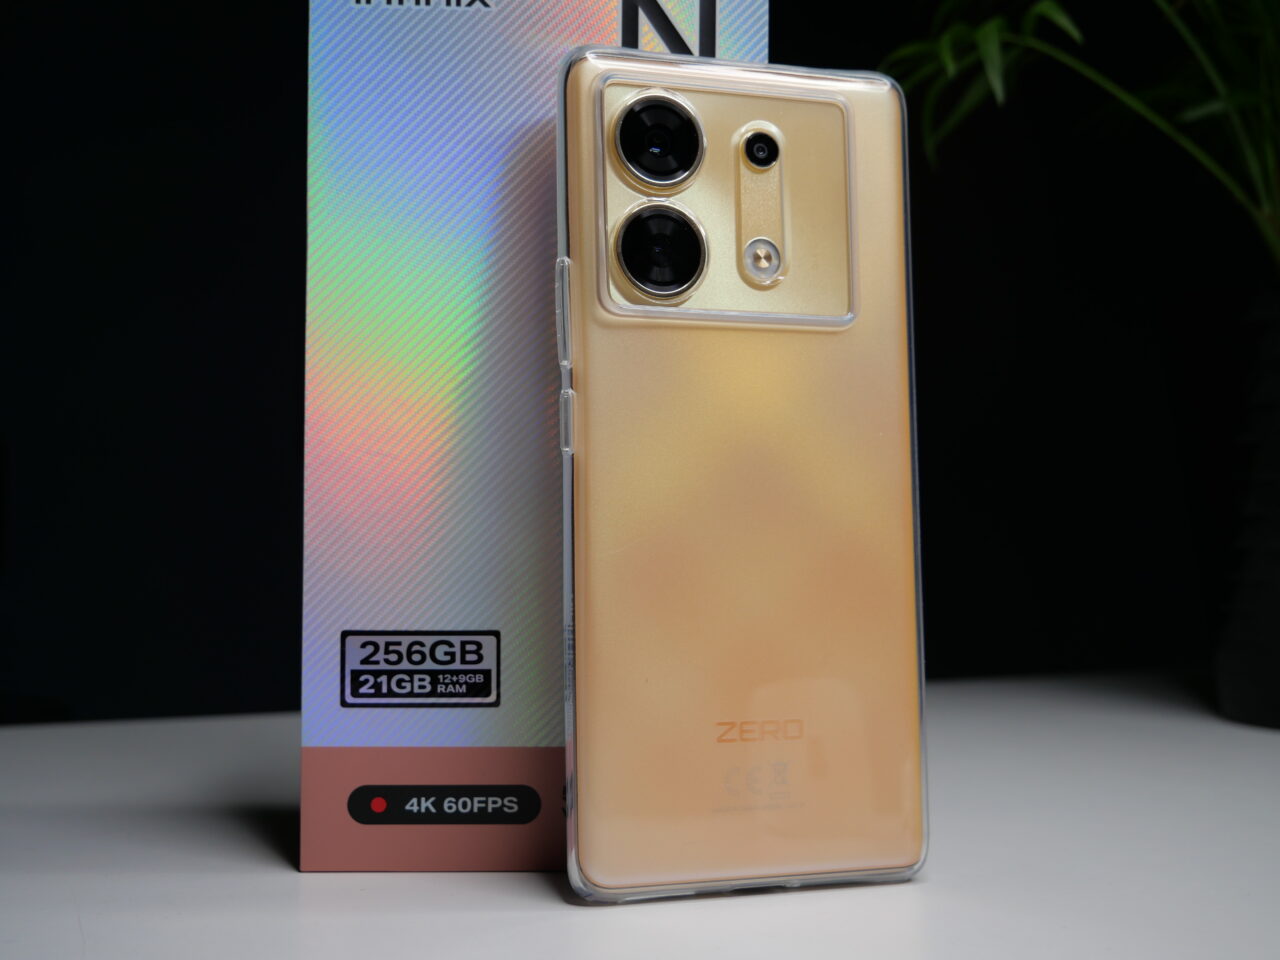 Złoty smartfon z potrójnym aparatem i błyszczącym gradientem na tylnej obudowie, oparty o pudełko z napisem "256GB 21GB RAM 4K 60FPS".